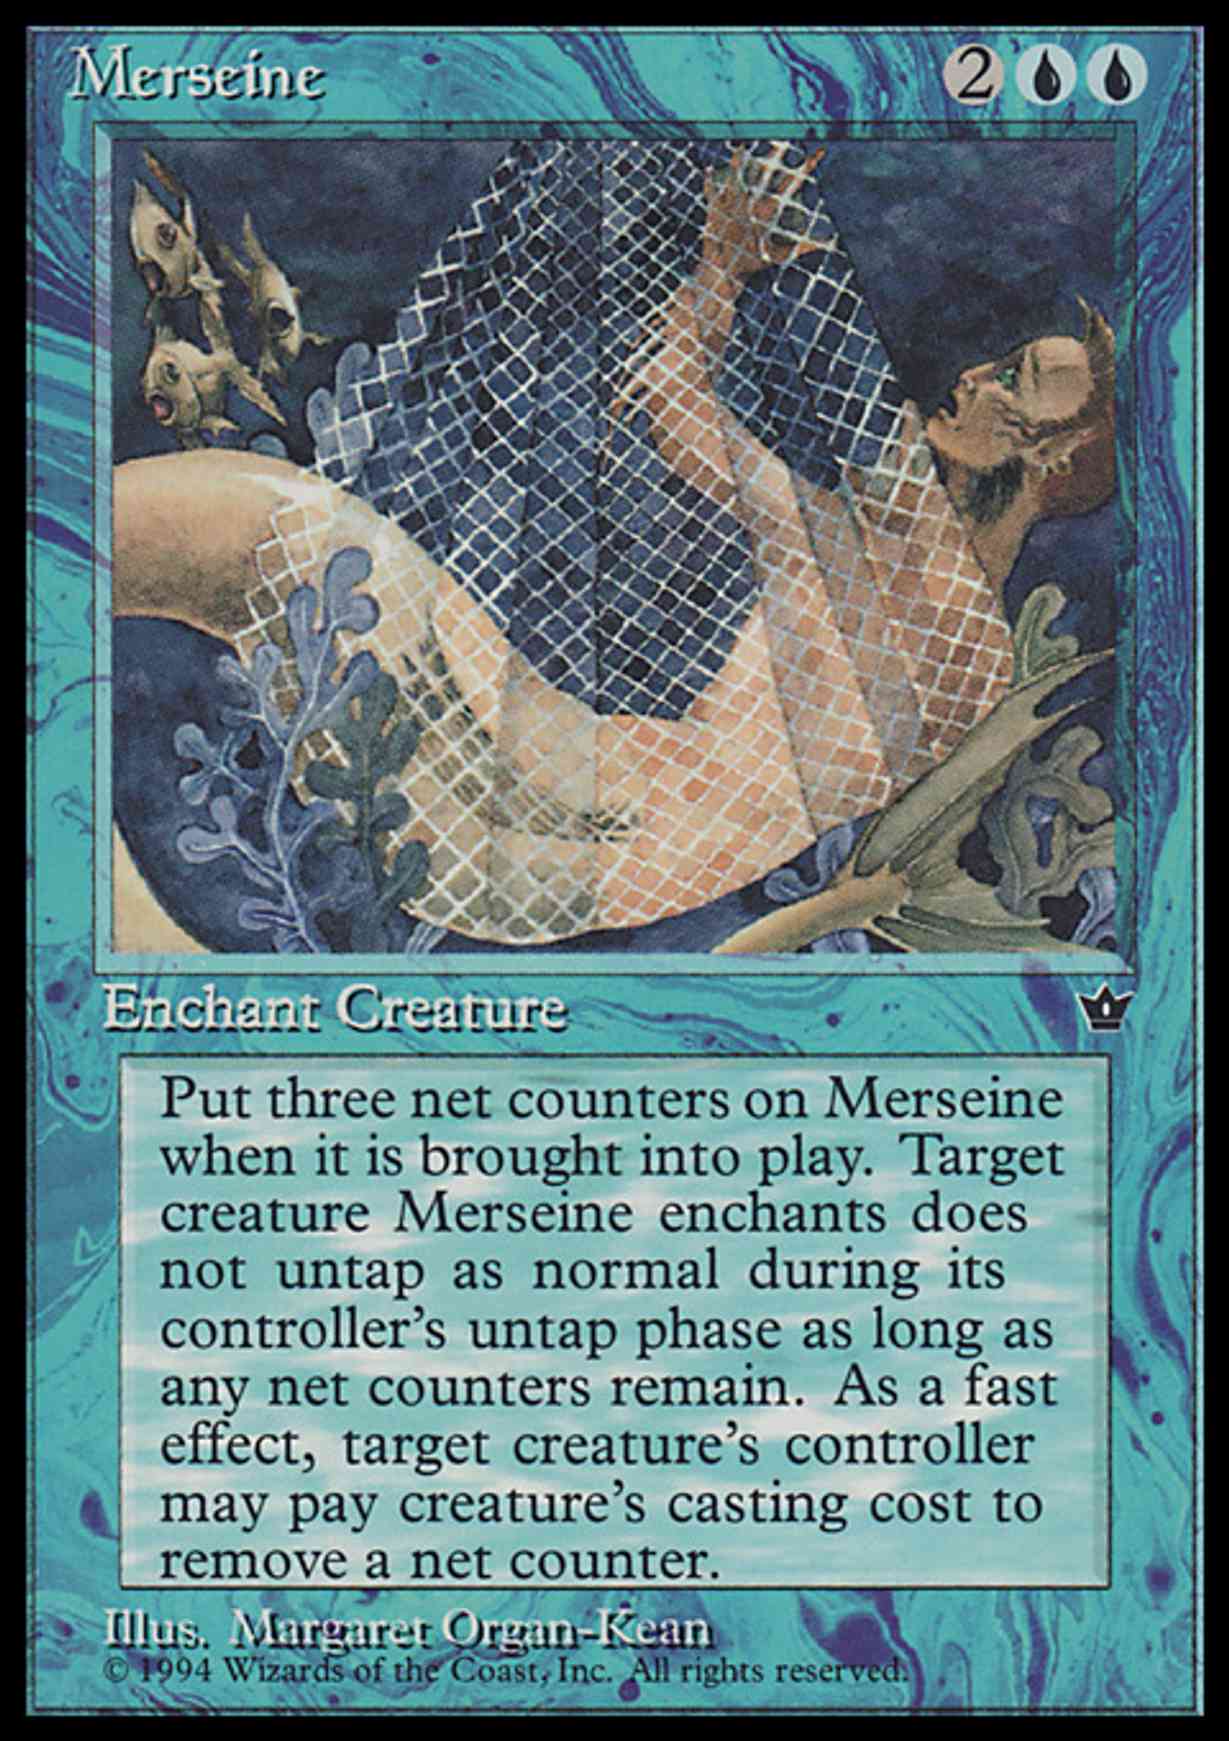 Merseine (Organ-Kean) magic card front